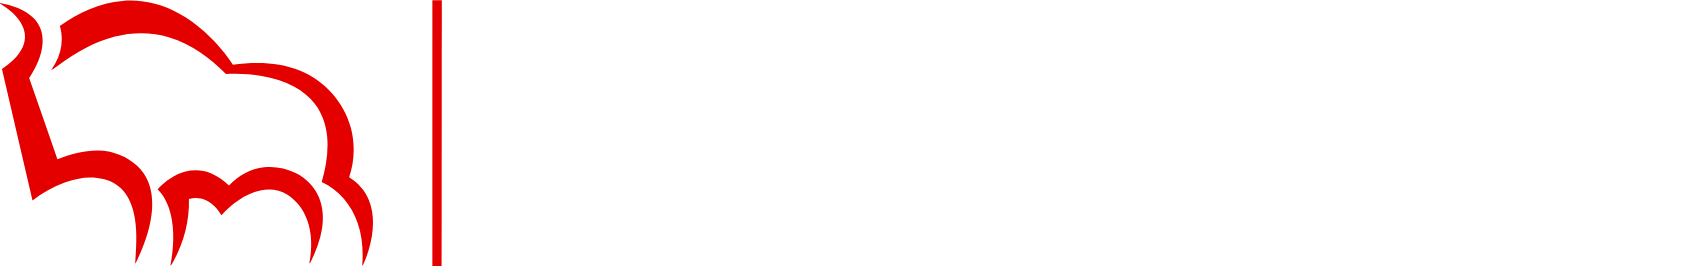 Bank Pekao (Bank Polska Kasa Opieki) logo large for dark backgrounds (transparent PNG)